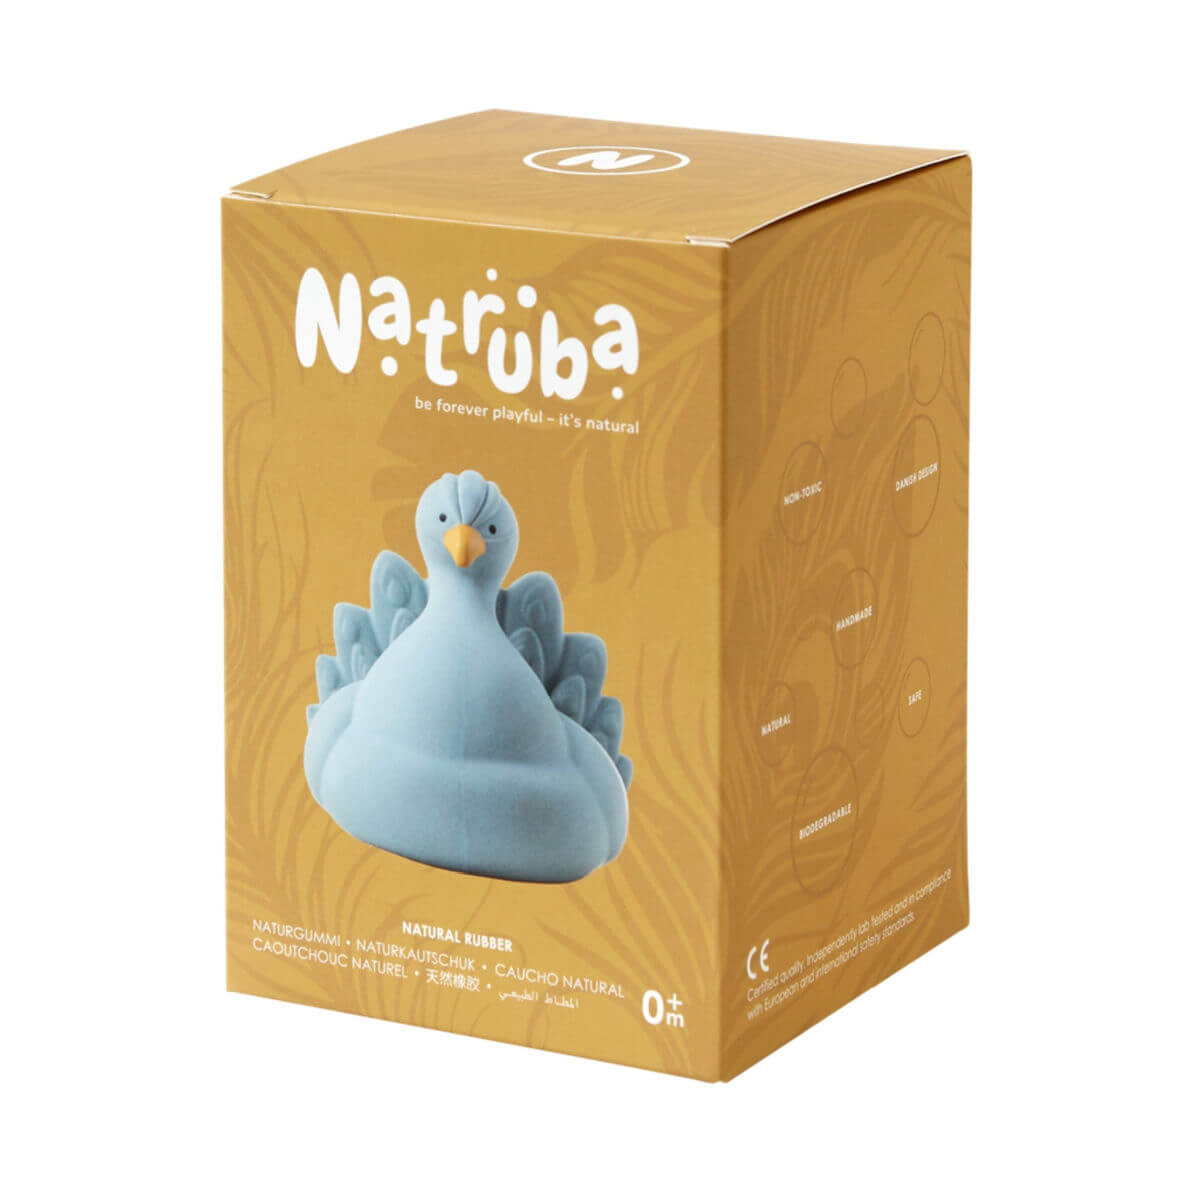 natruba natural rubber bath toy peacock light blue